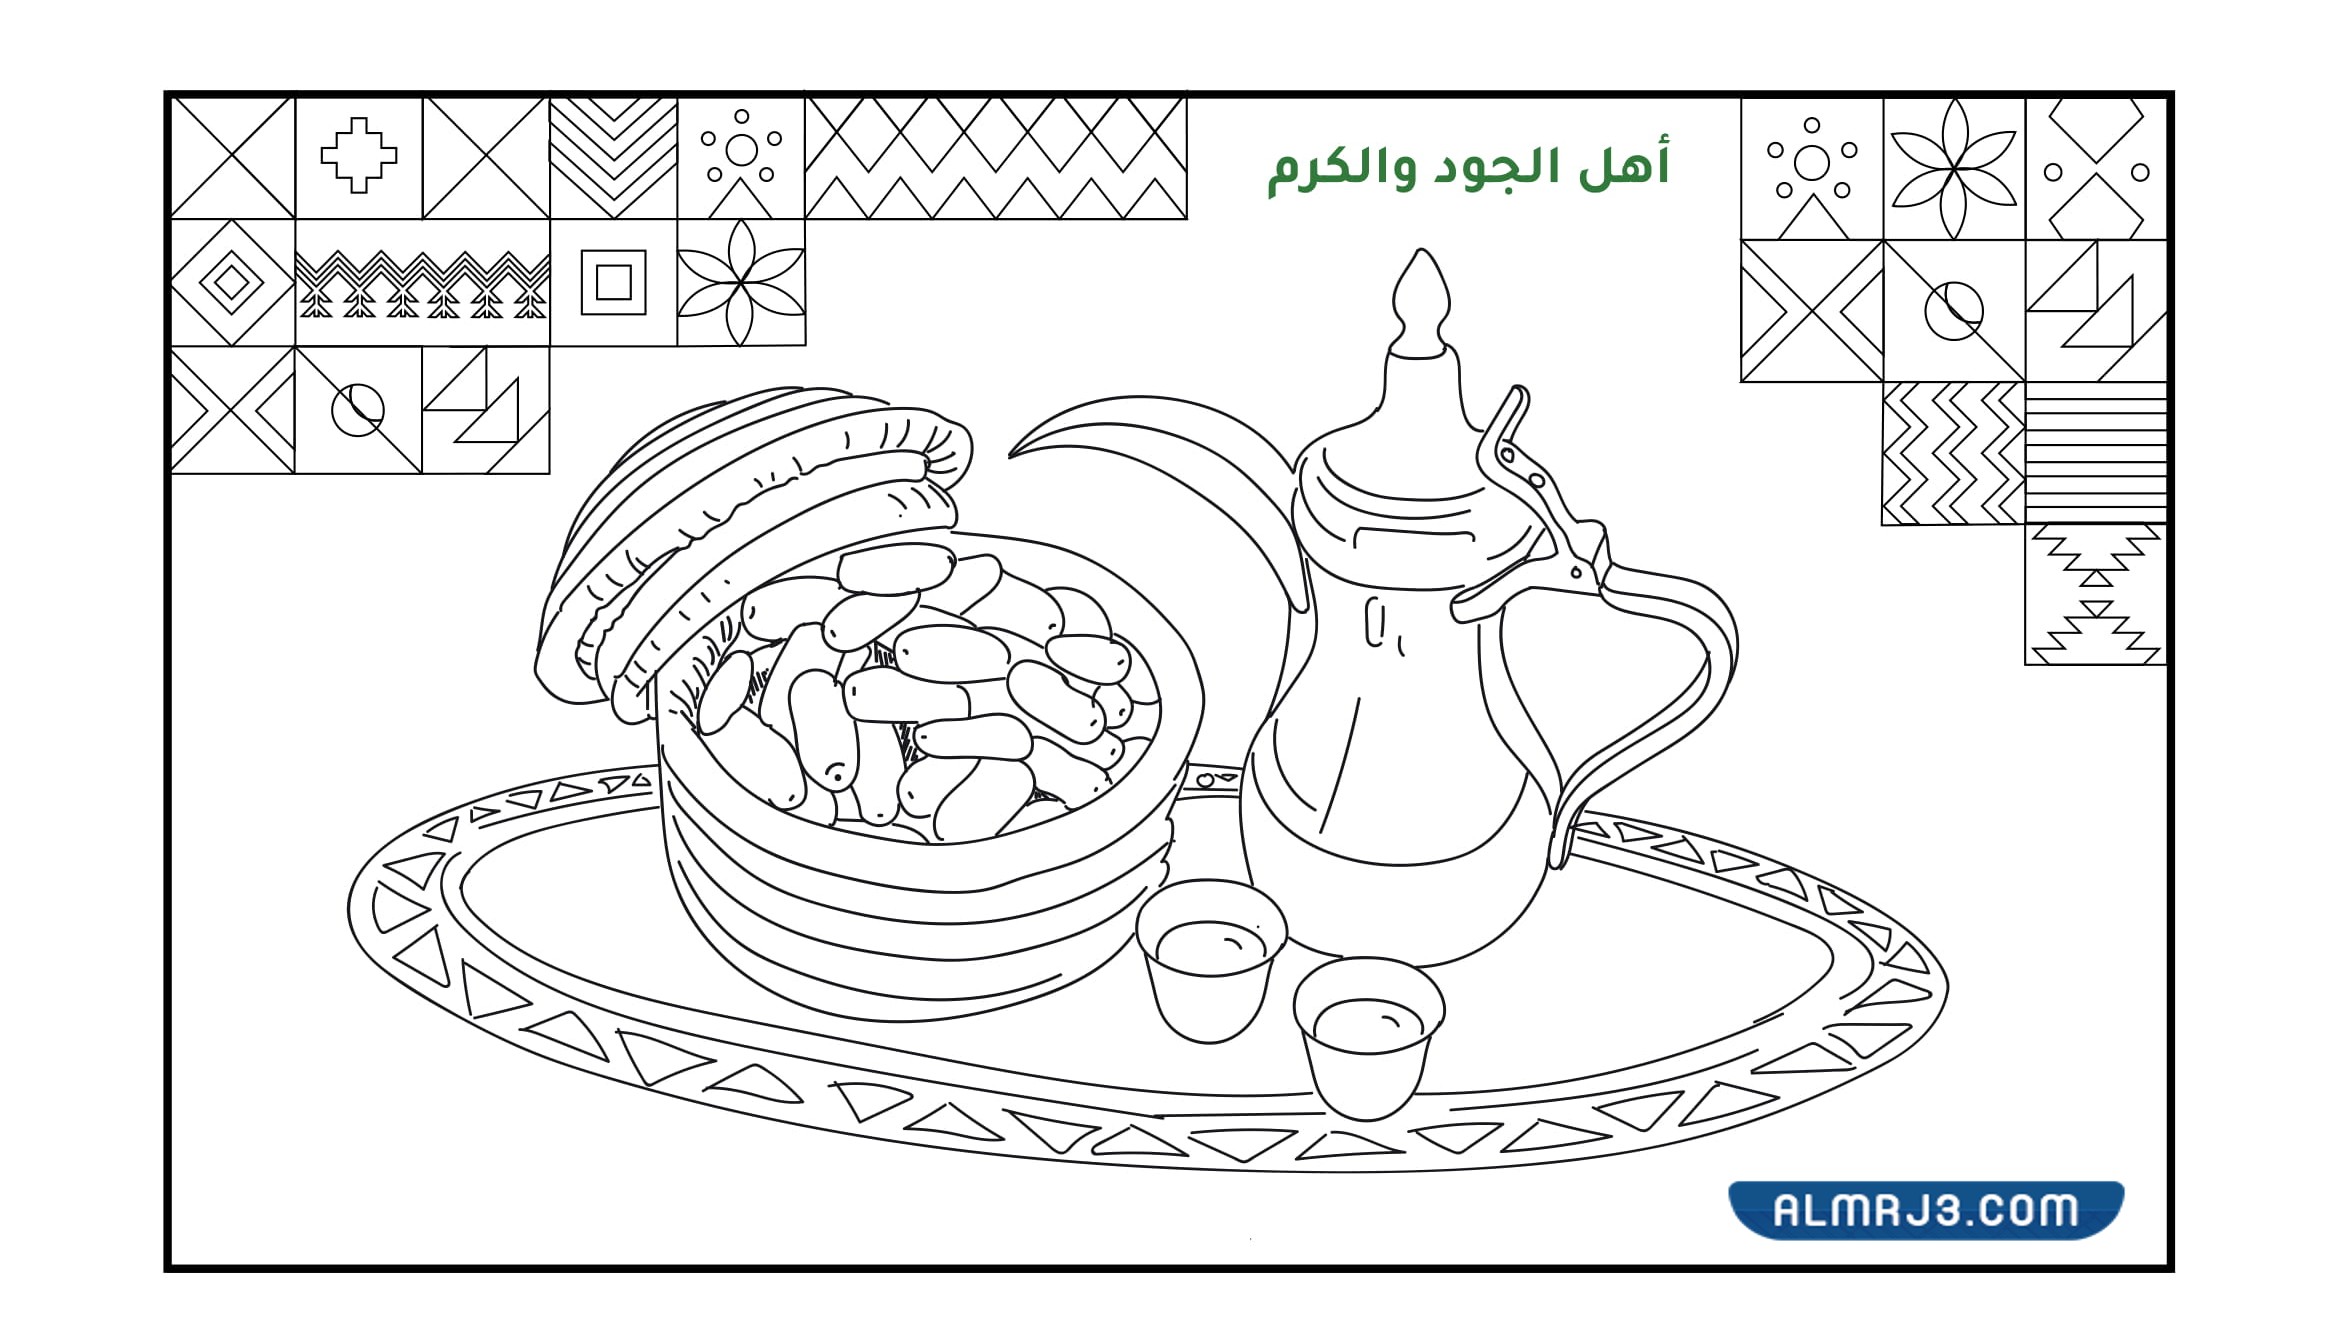 رسومات اليوم الوطني 92 للمملكة العربية السعودية للأطفال